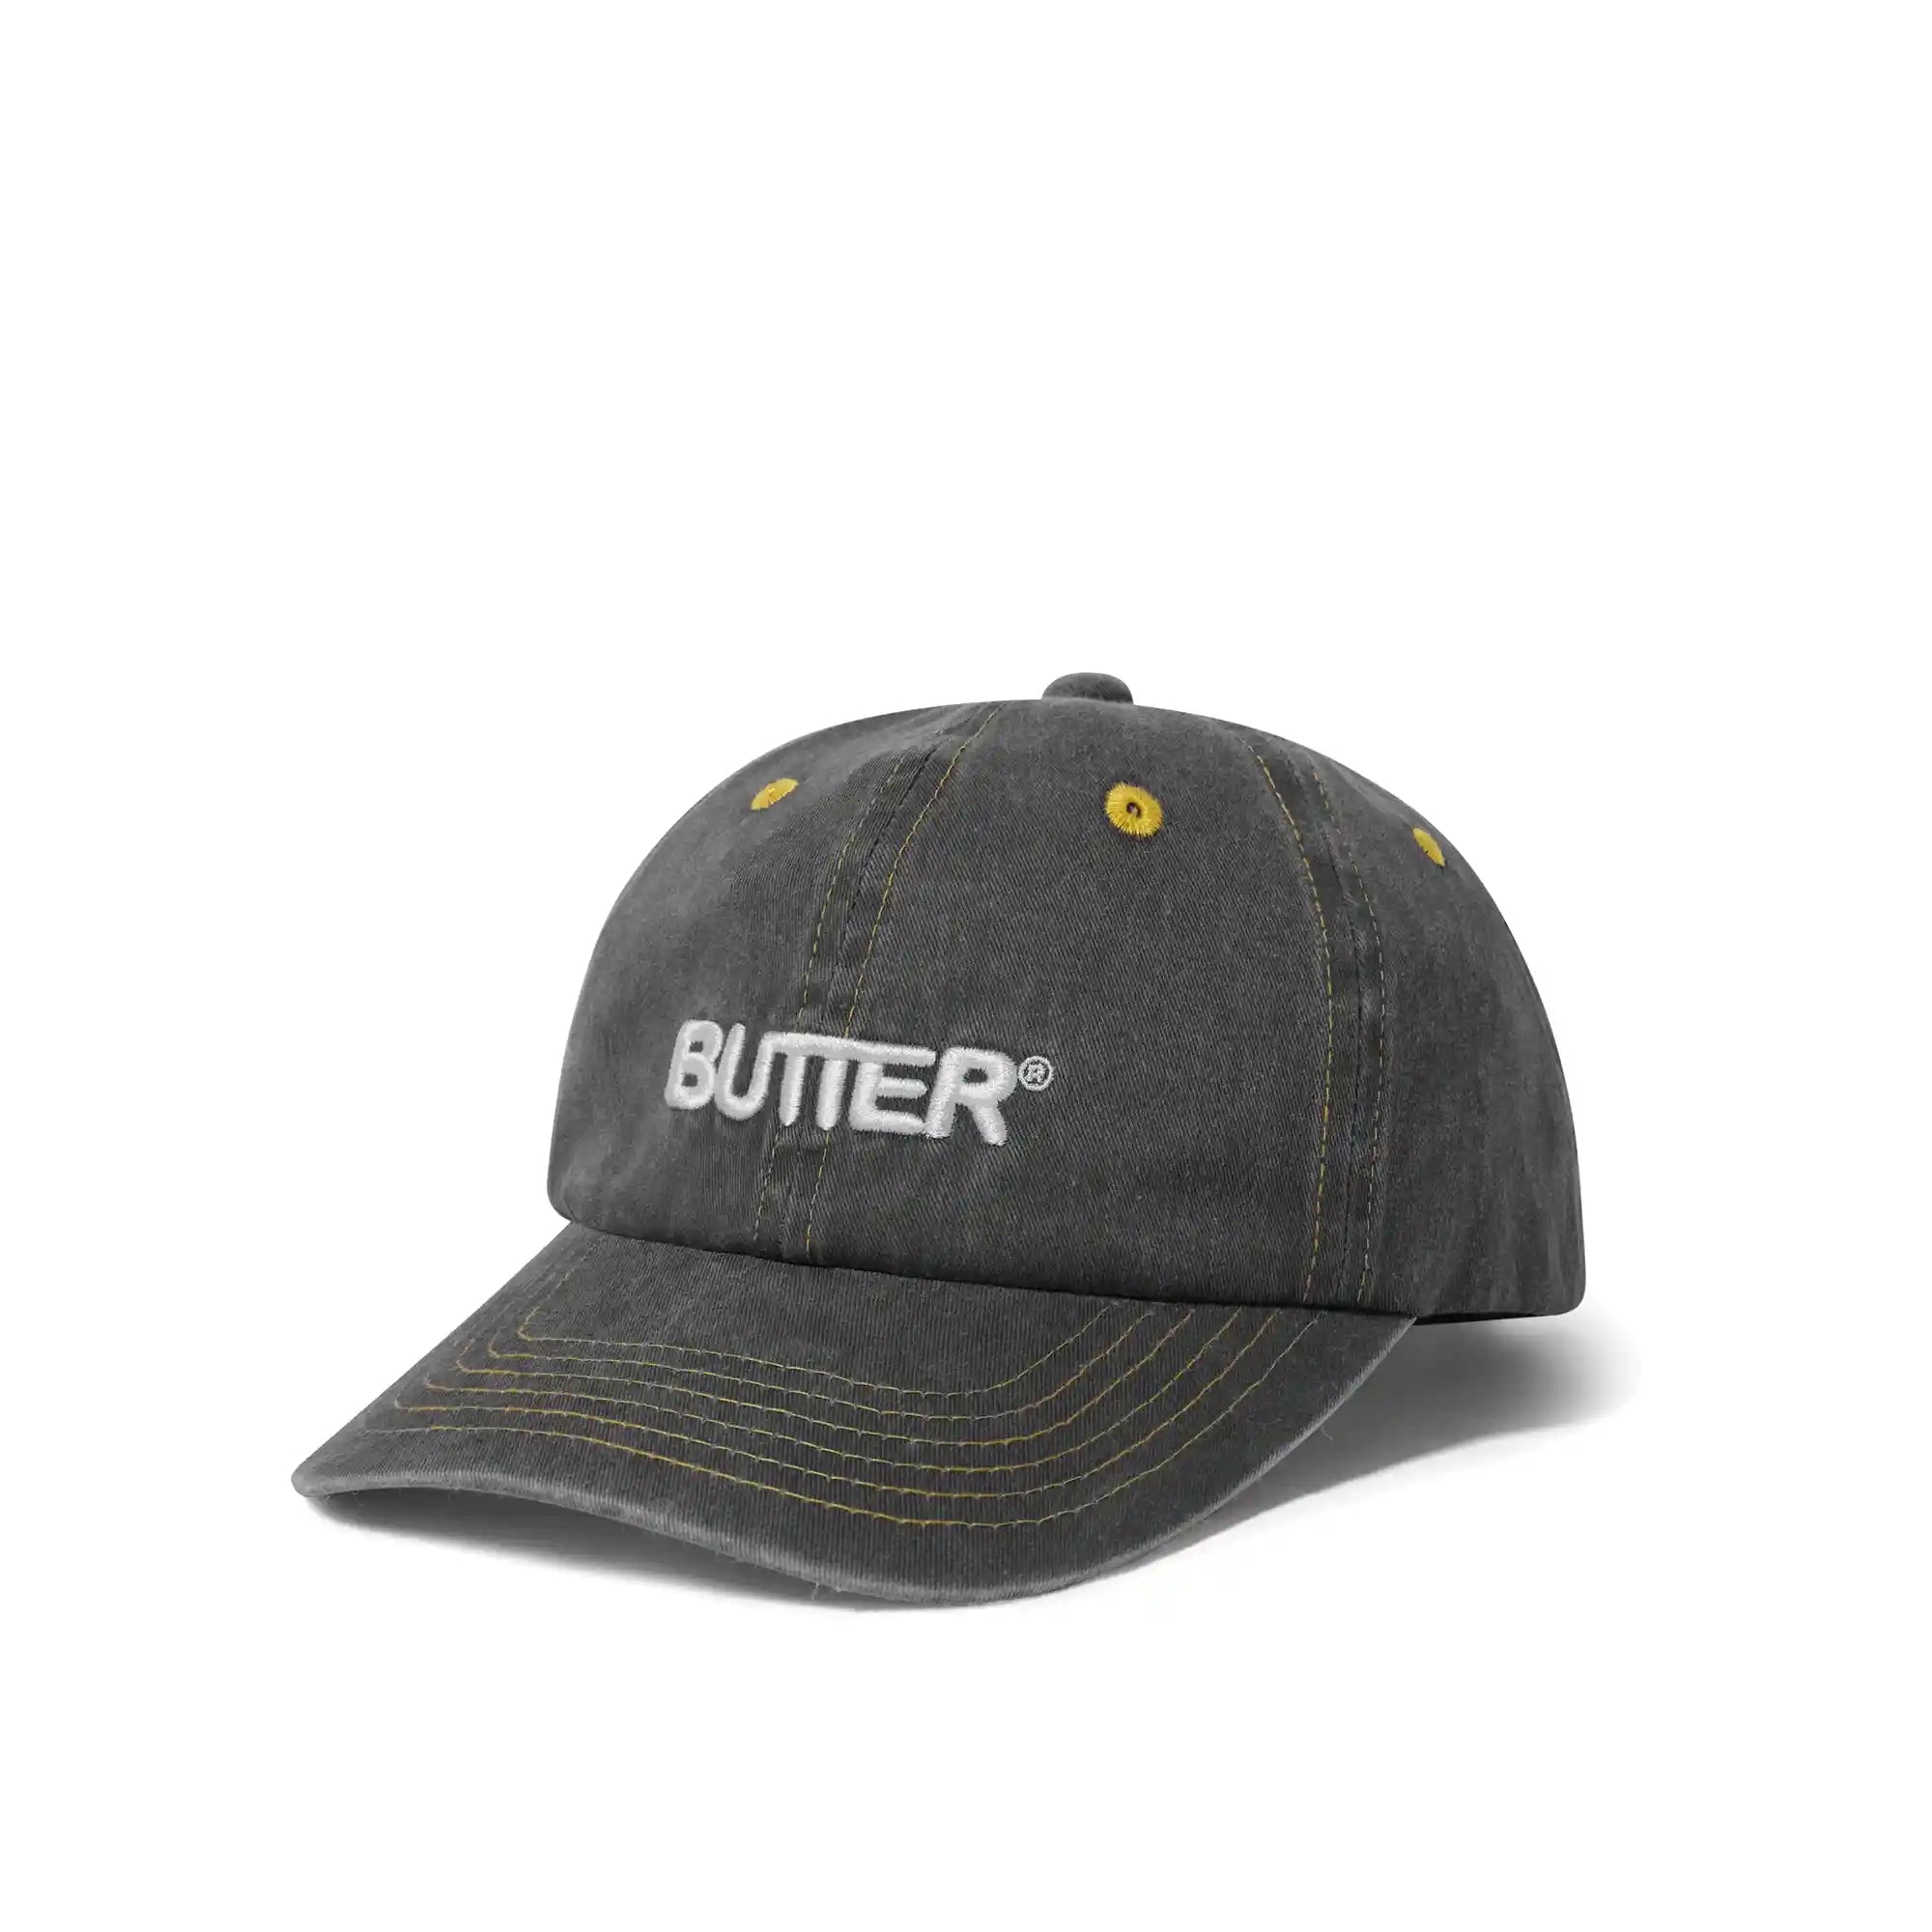 ラッピング無料 Butter – Goods Butter Personal Hat, Trucker Hat ...